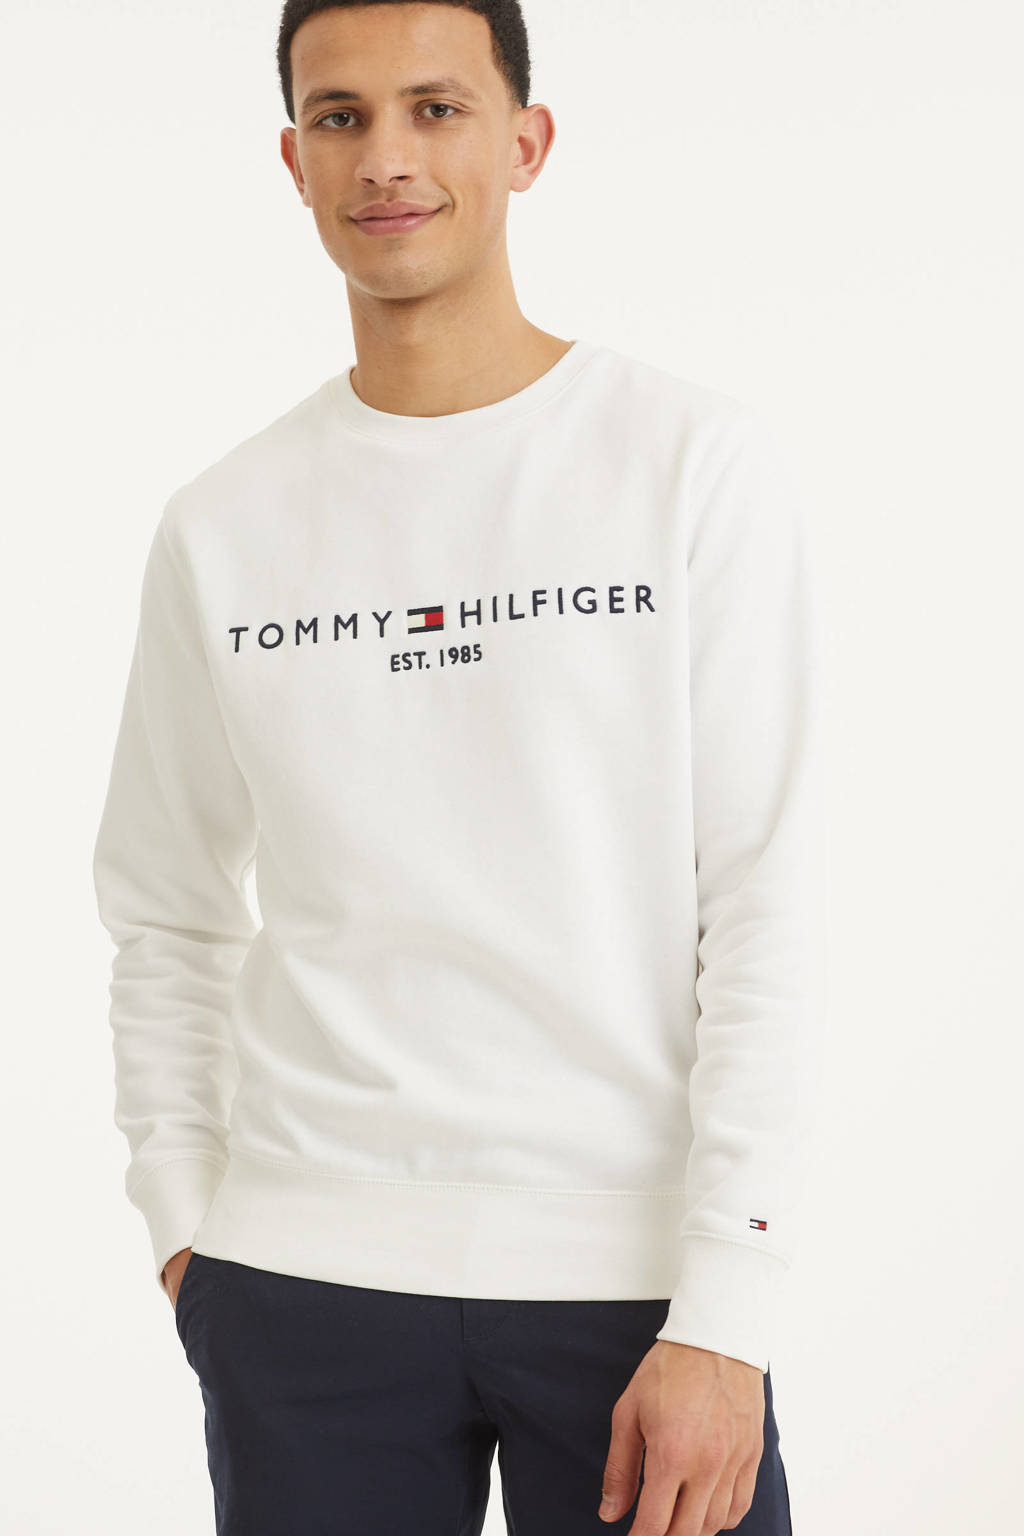 stap in buitenspiegel drie Tommy Hilfiger sweater met logo wit | wehkamp